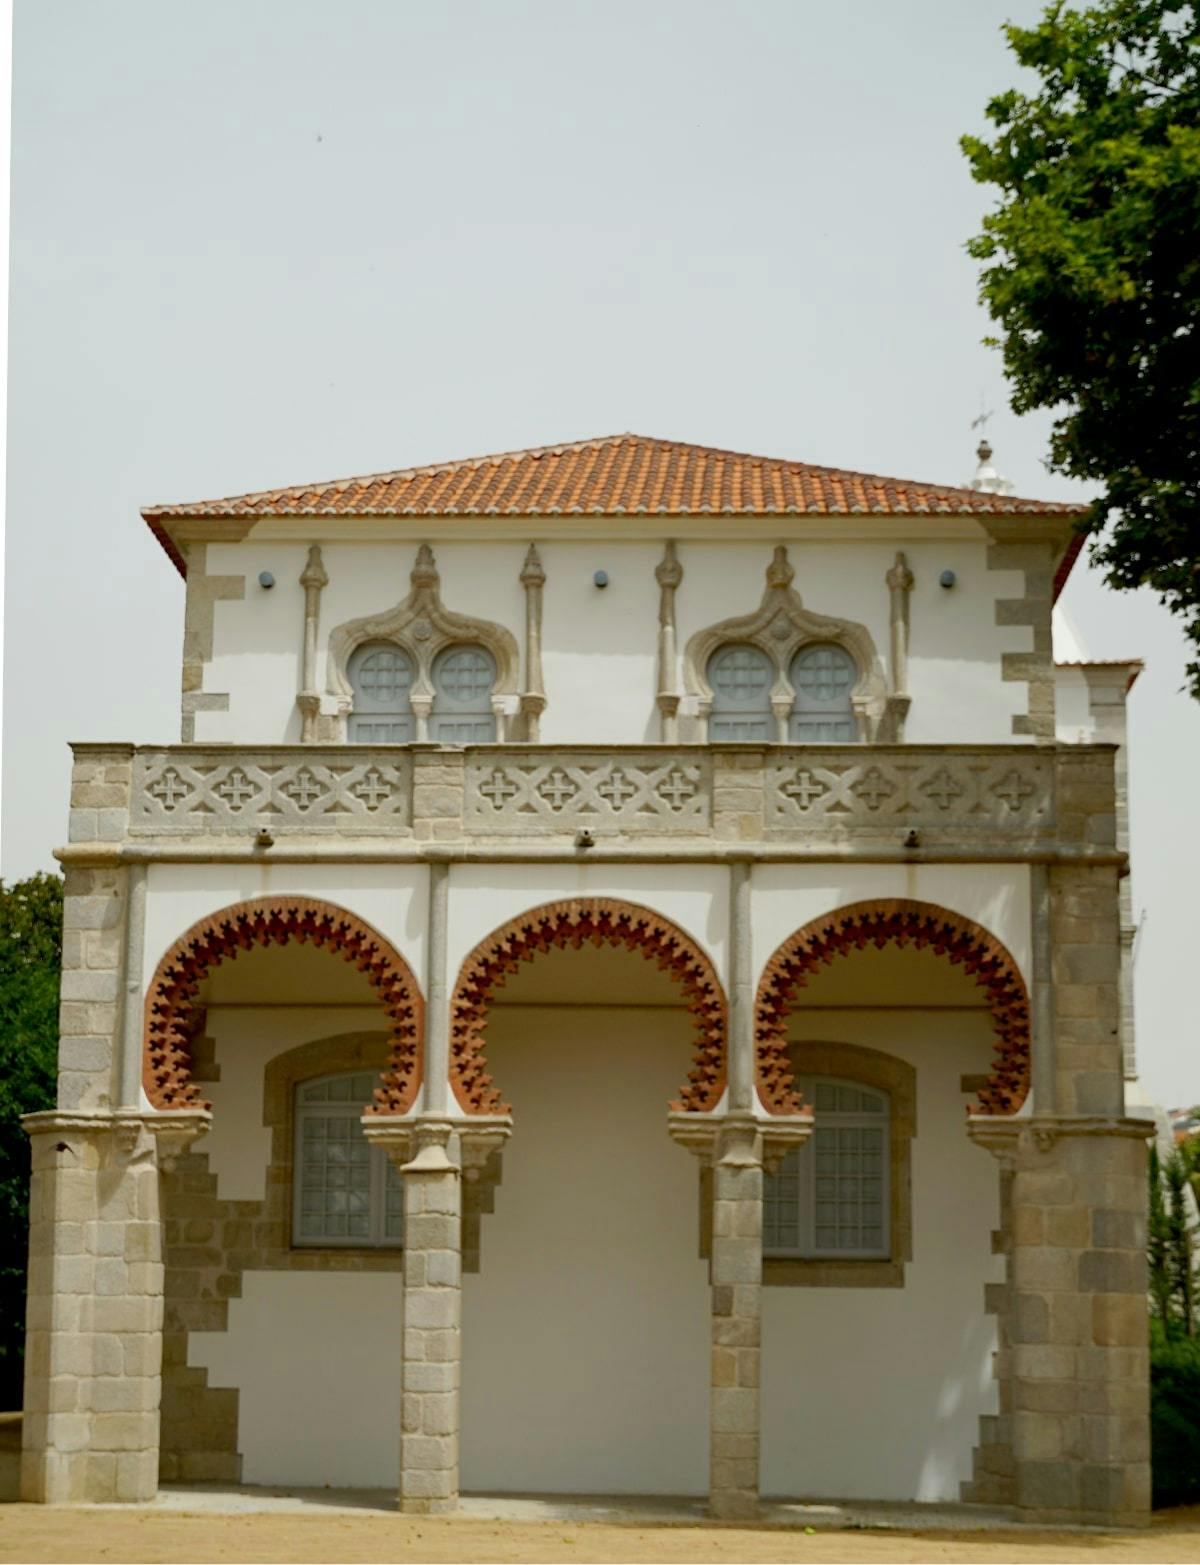 The Palace of Dom Manuel (Interpretation Centre + Évora Public Gardens)